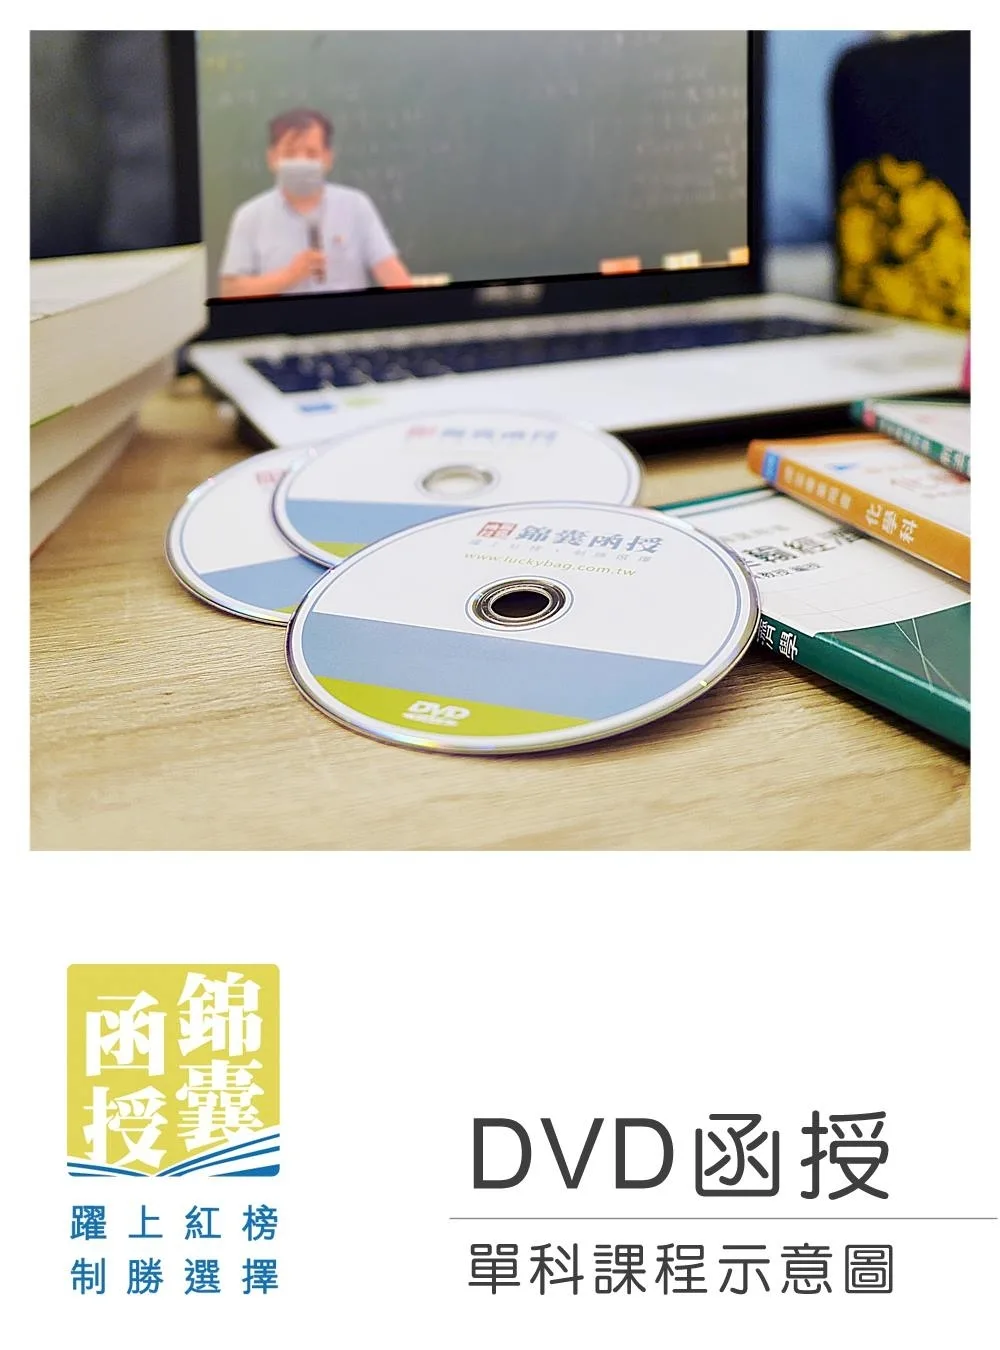 【DVD函授】不動產估價�土地估價-單科課程(111版)